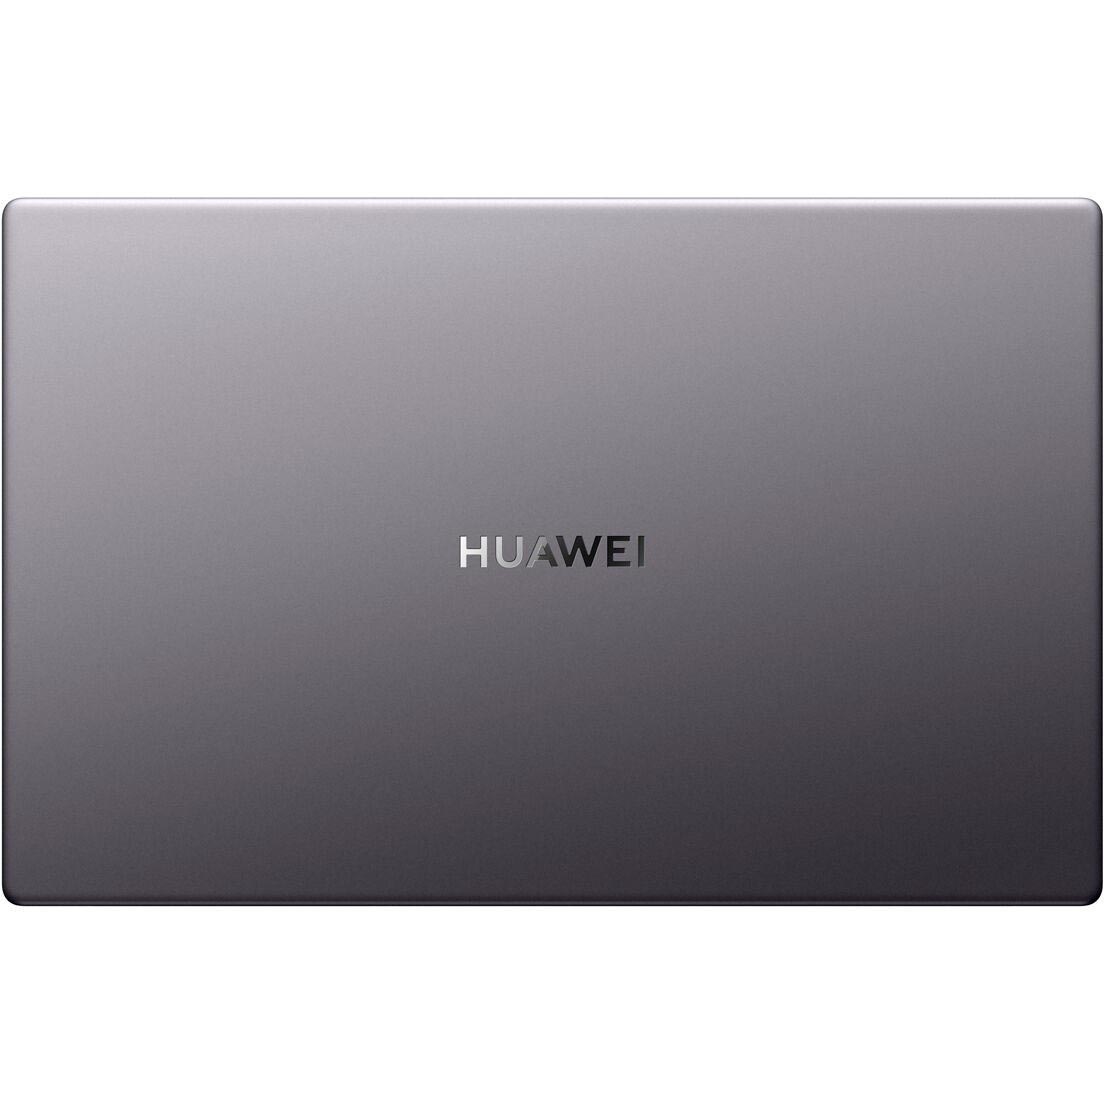 Huawei matebook d bode wdh9 15.6. Ноутбук Huawei MATEBOOK d15 bod wdi9. Ноутбук ASUS x540ma-gq035. Ноутбук Huawei MATEBOOK D 14 NBM-wdq9 8+512gb Space Grey. Ультрабук Huawei MATEBOOK D 14.